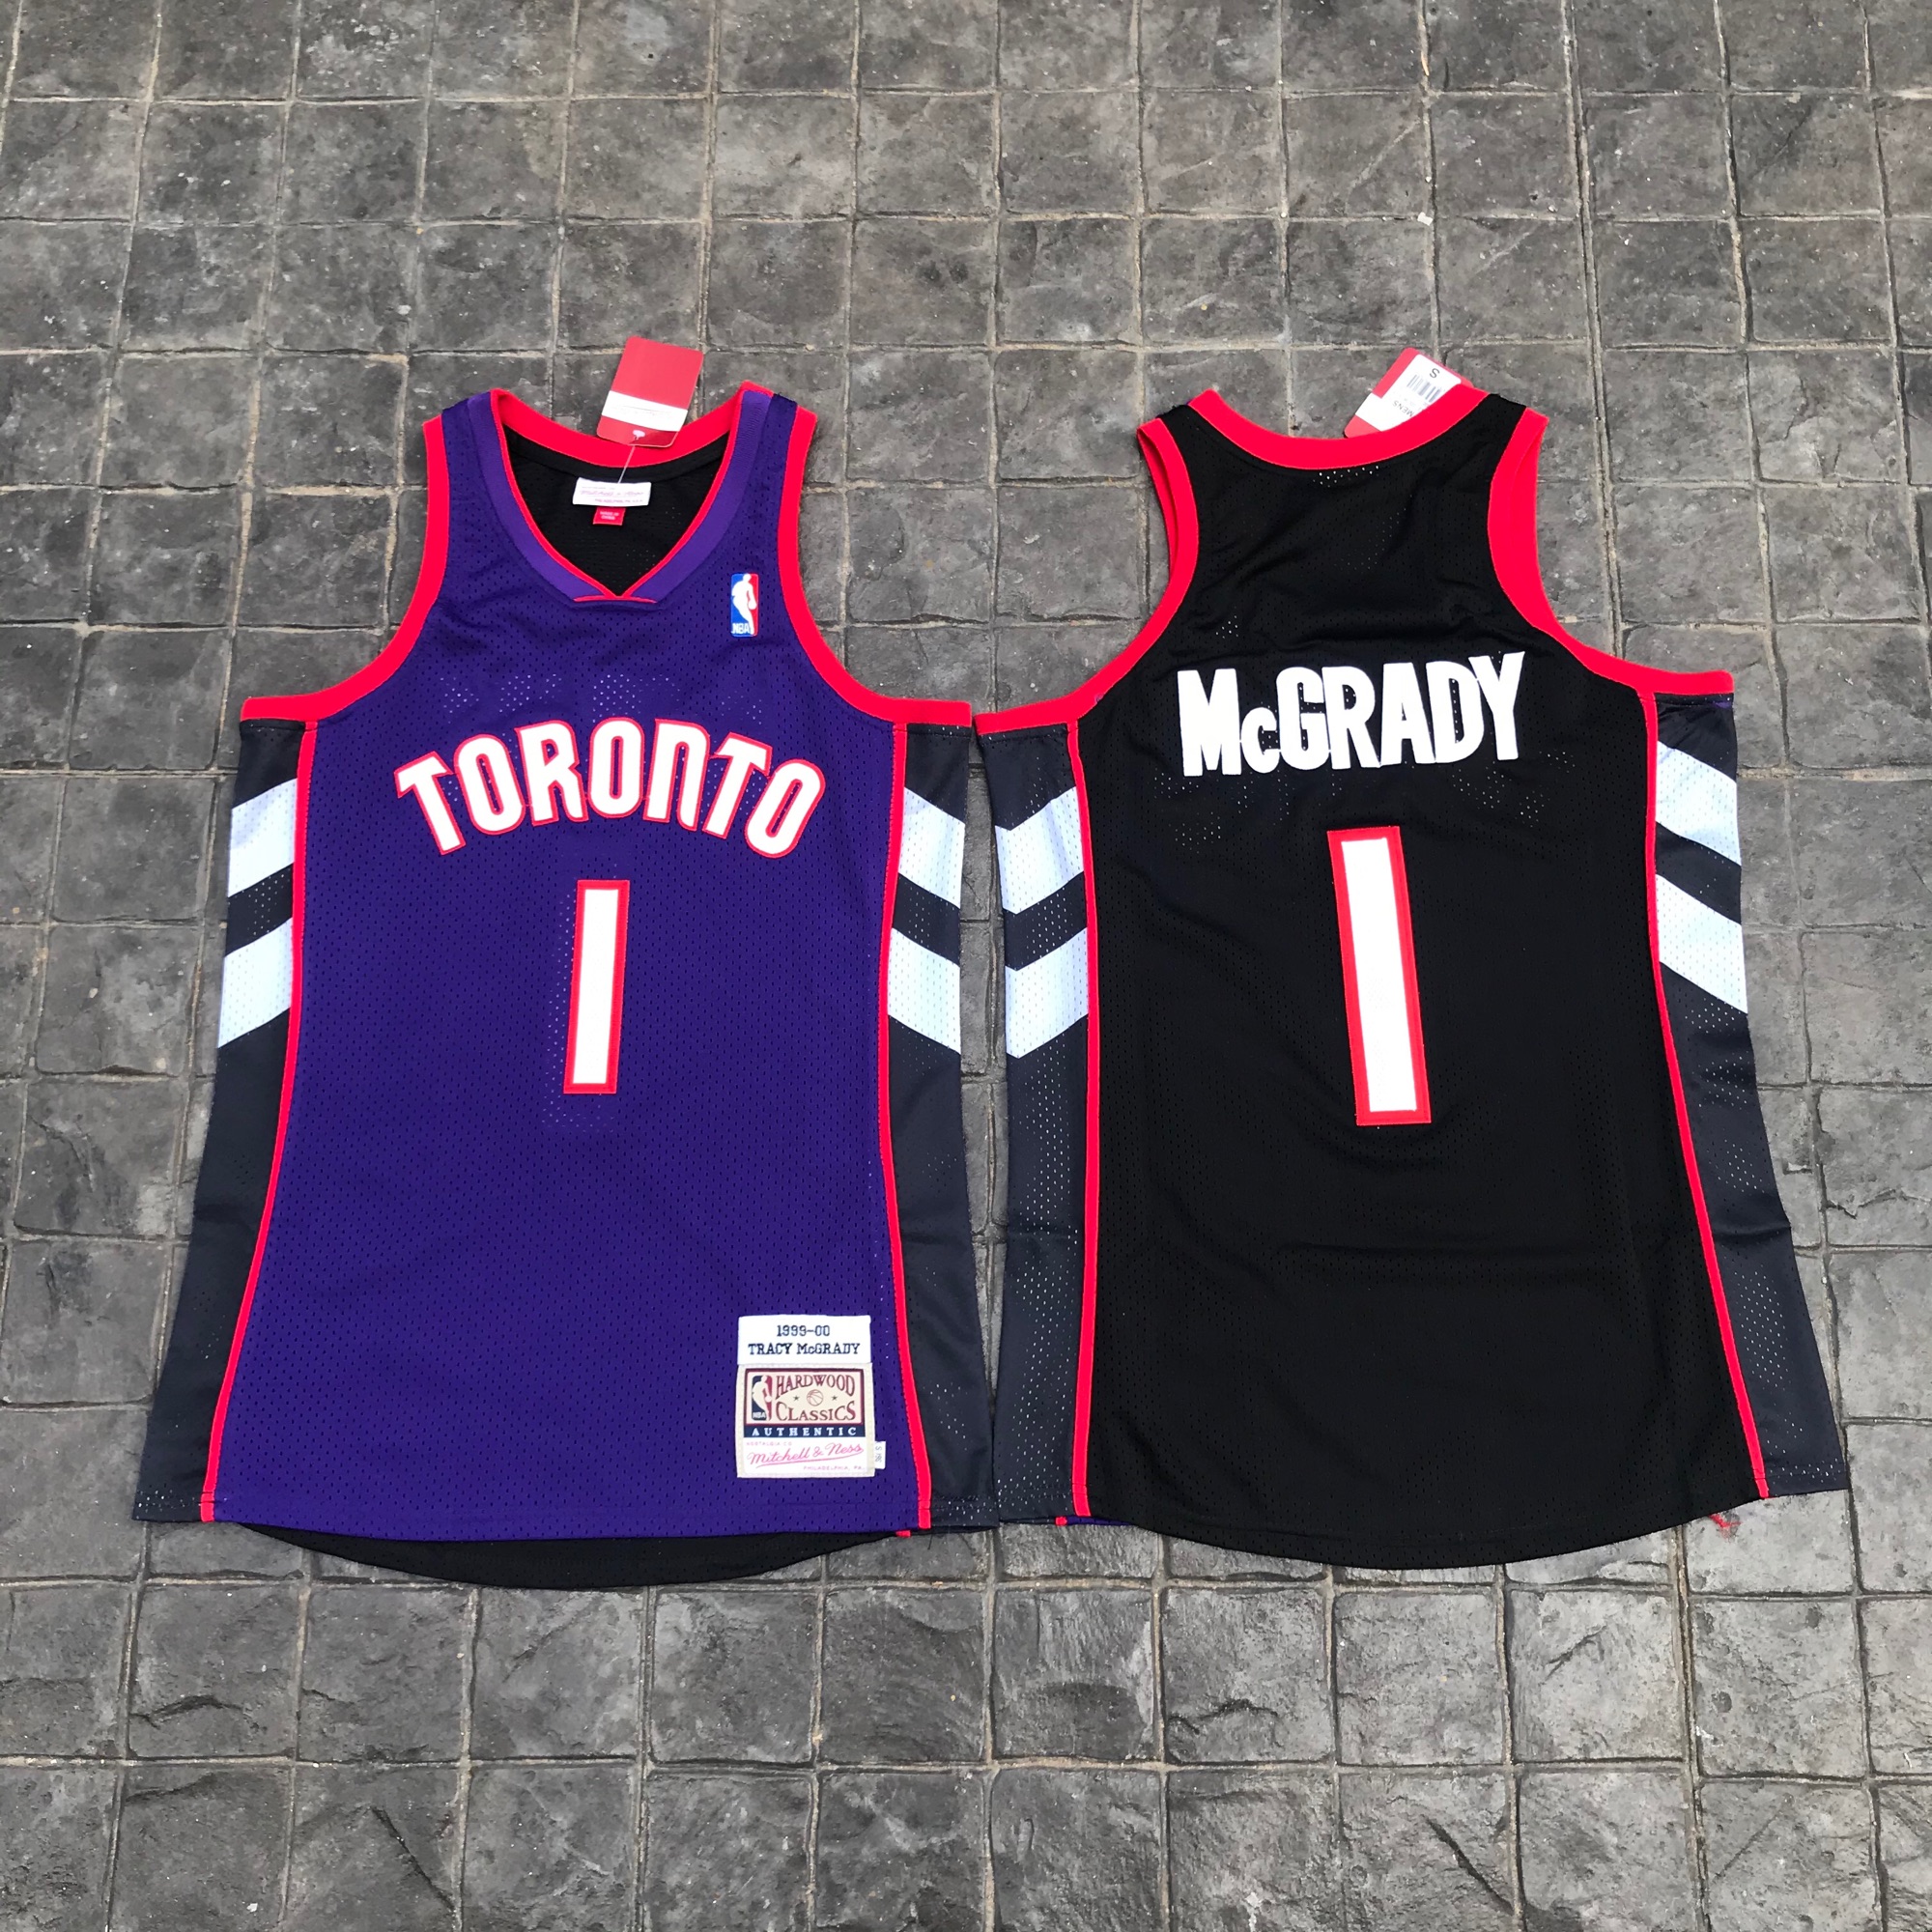 เสื้อบาสเกตบอลbasketball.jerseys(พร้อมจัดส่ง)#Toronto McGrady 1.